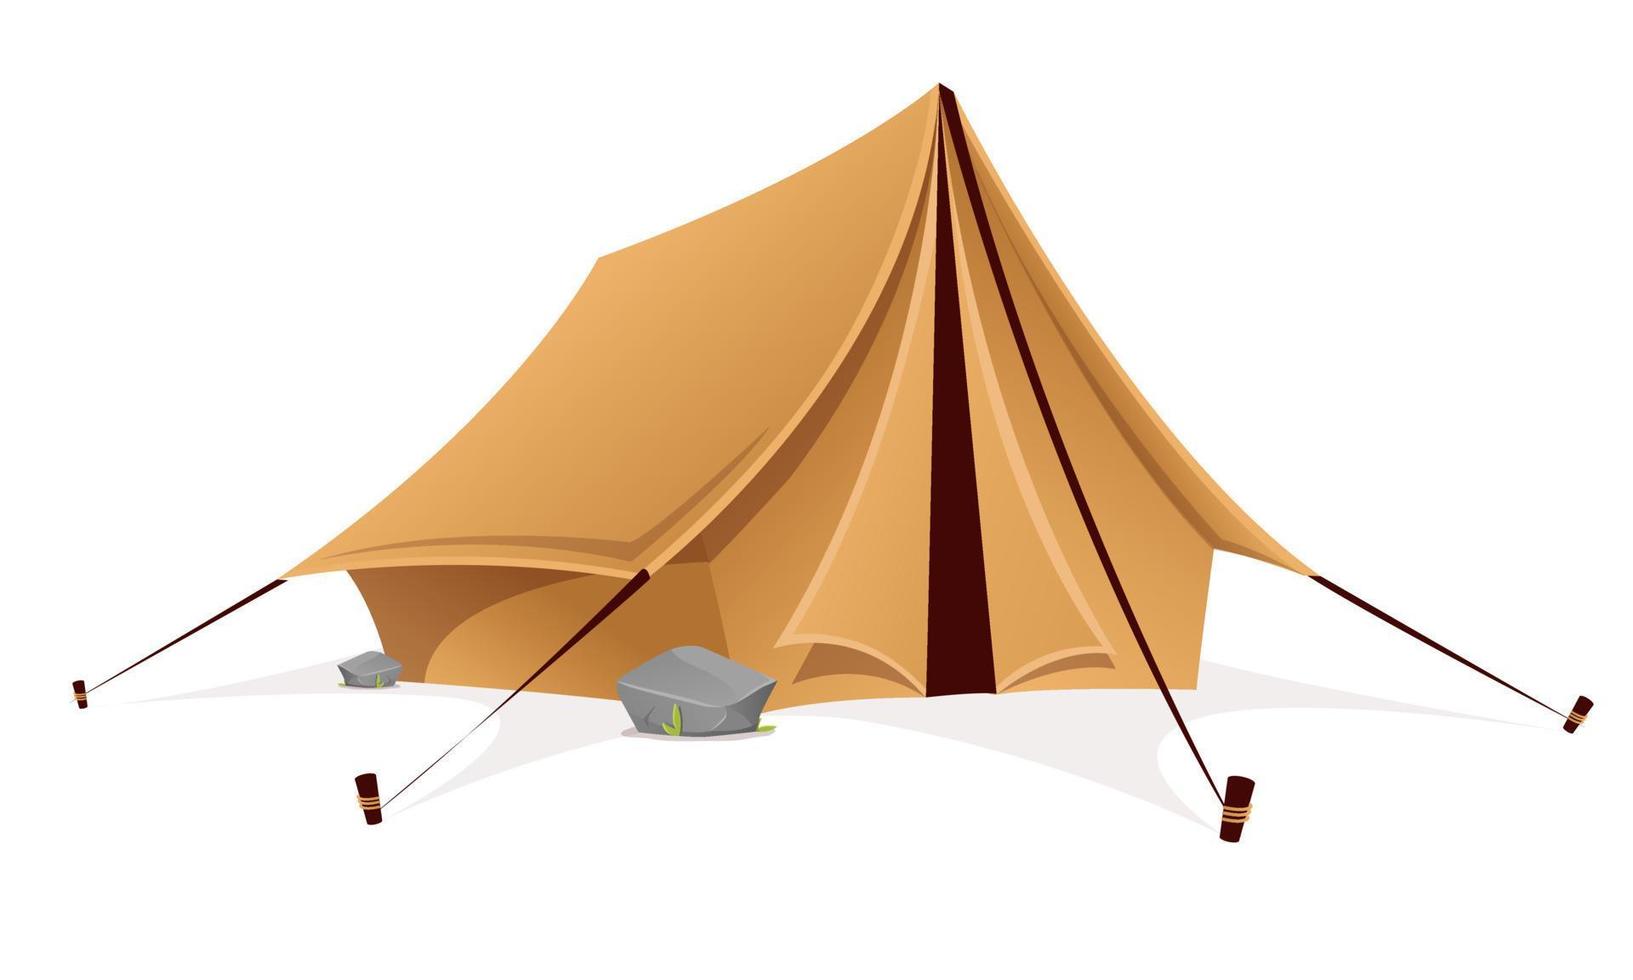 barraca de acampamento turística, equipamento esportivo de acampamento. Ilustração em vetor estilo 3D de tenda para atividades de turismo e caminhadas.